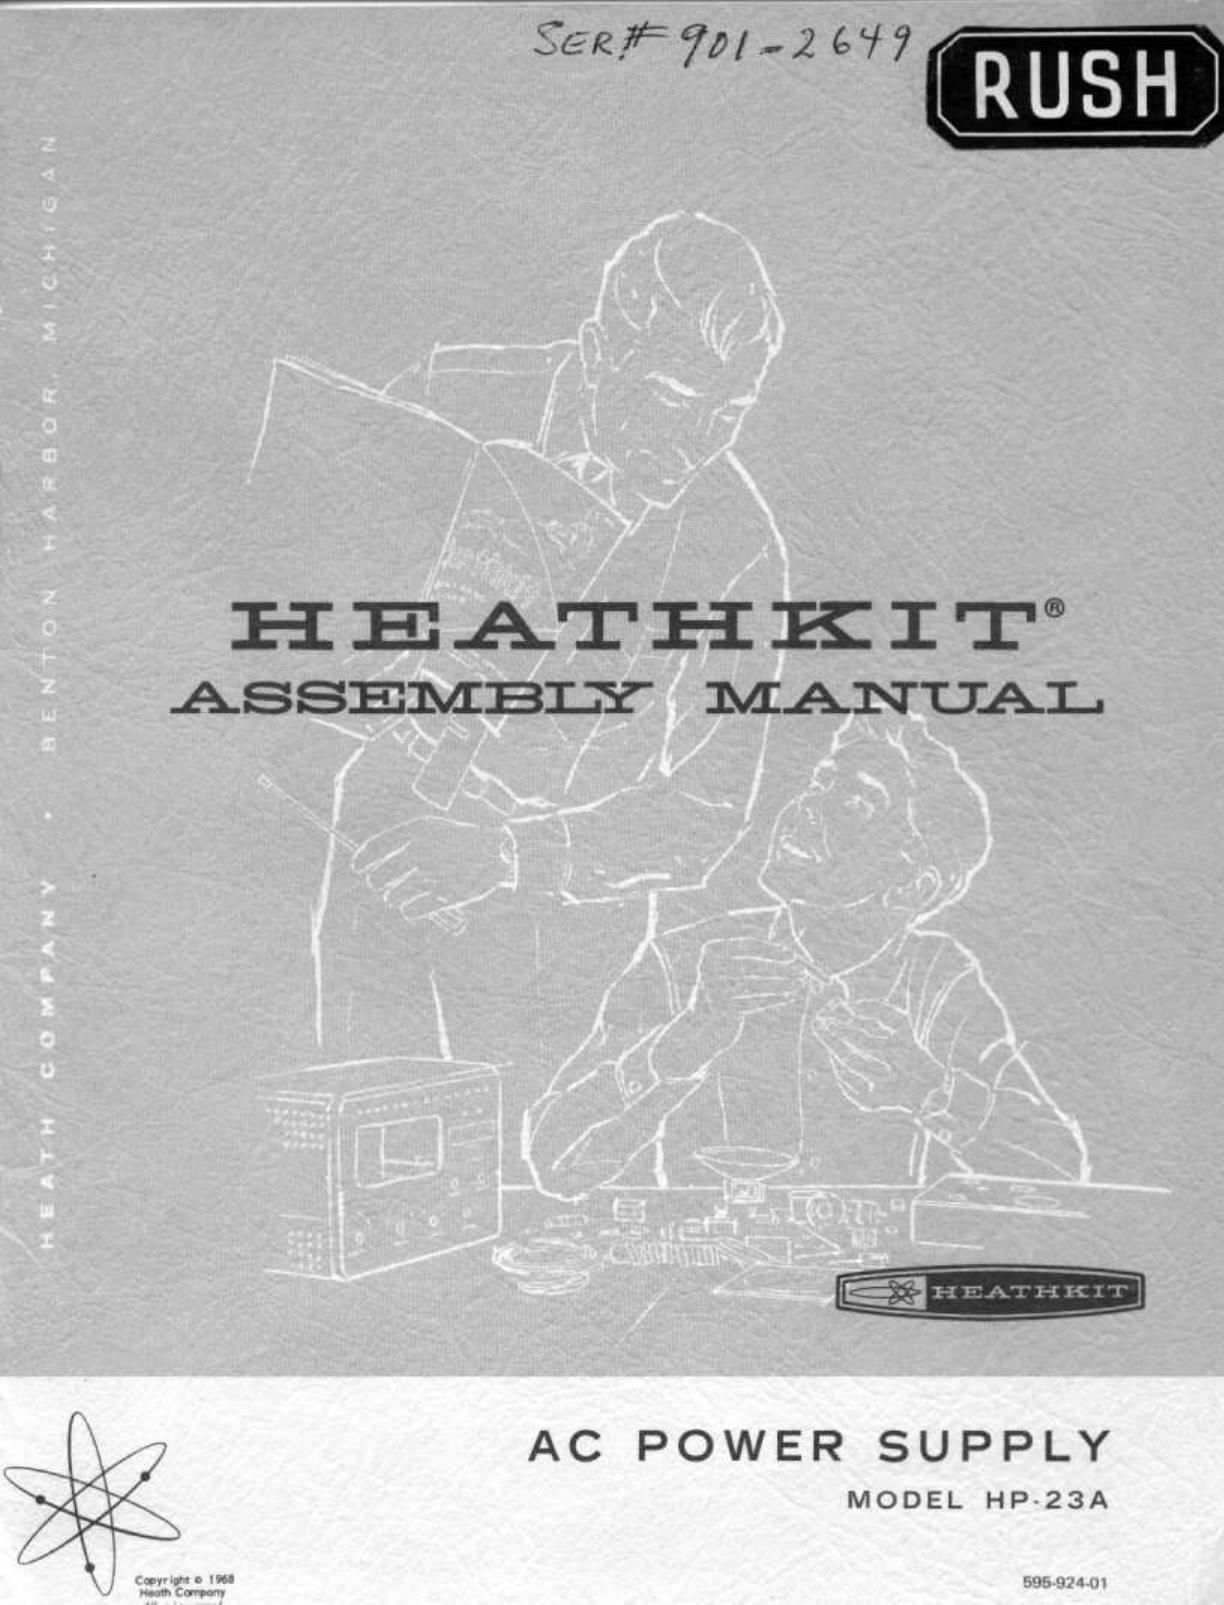 Heathkit HP 23A Manual